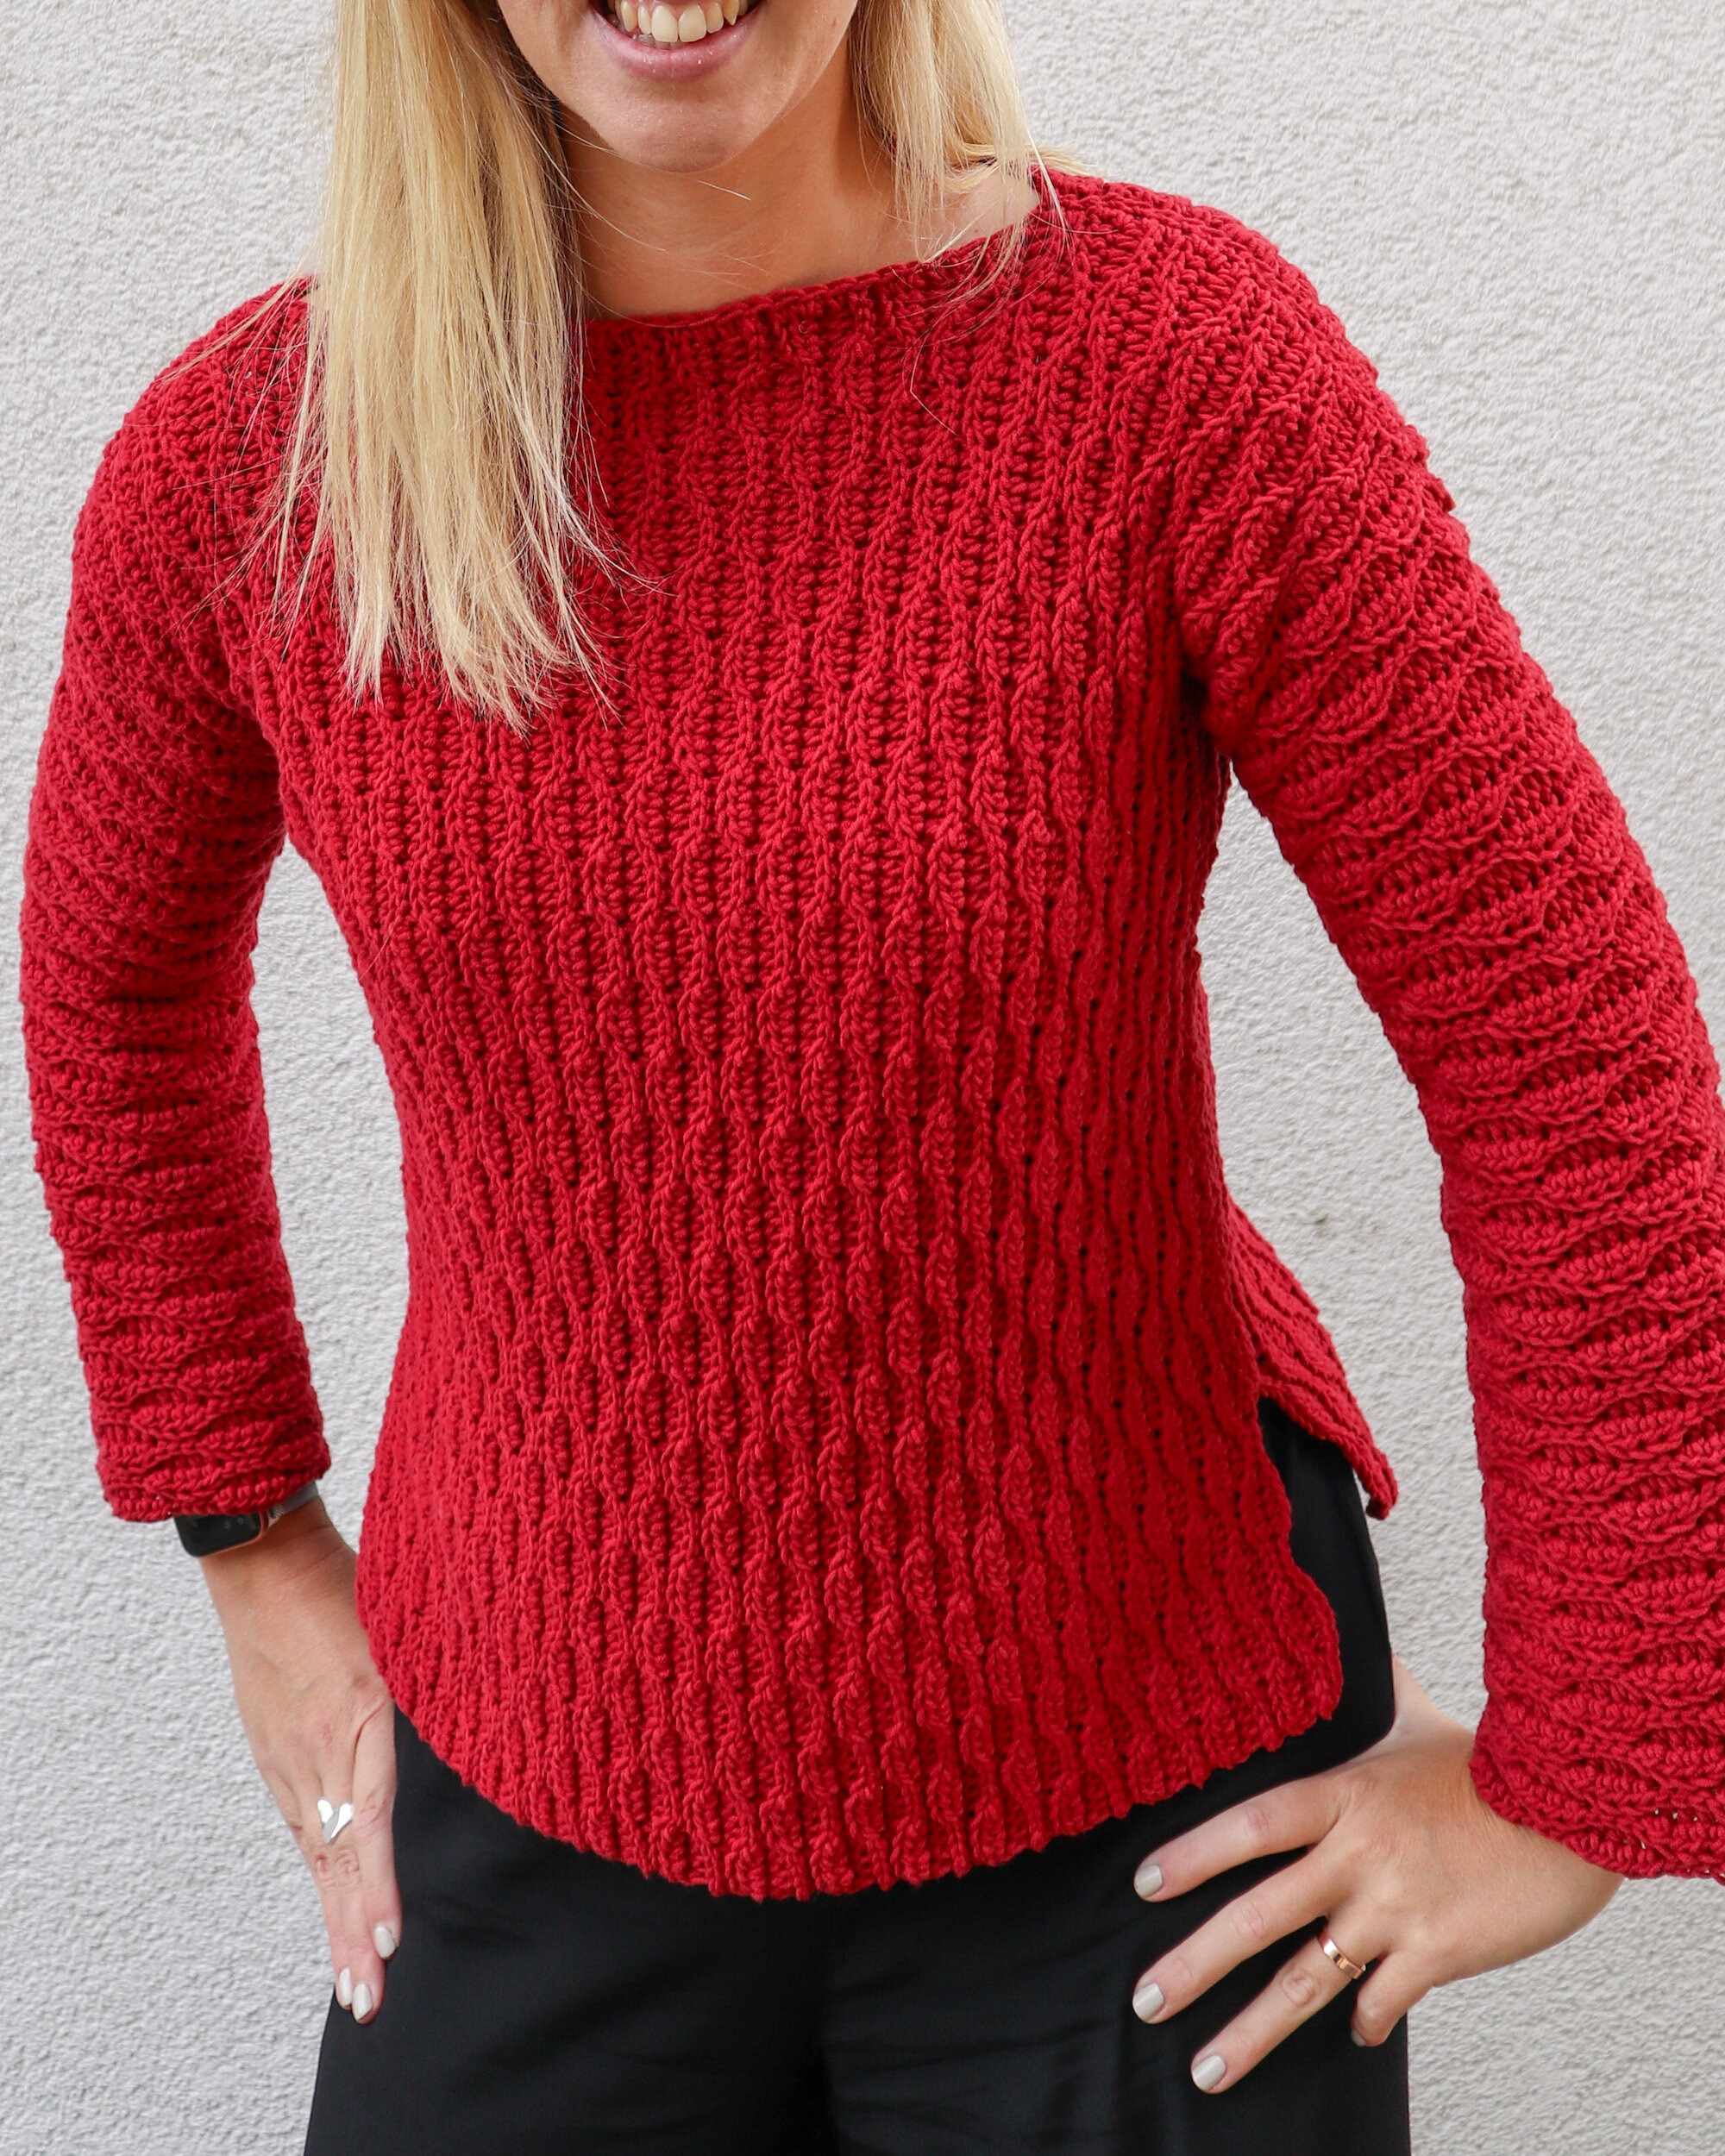 Crochet Pattern x Deco Waves Sweater — Coffee & Crocheting